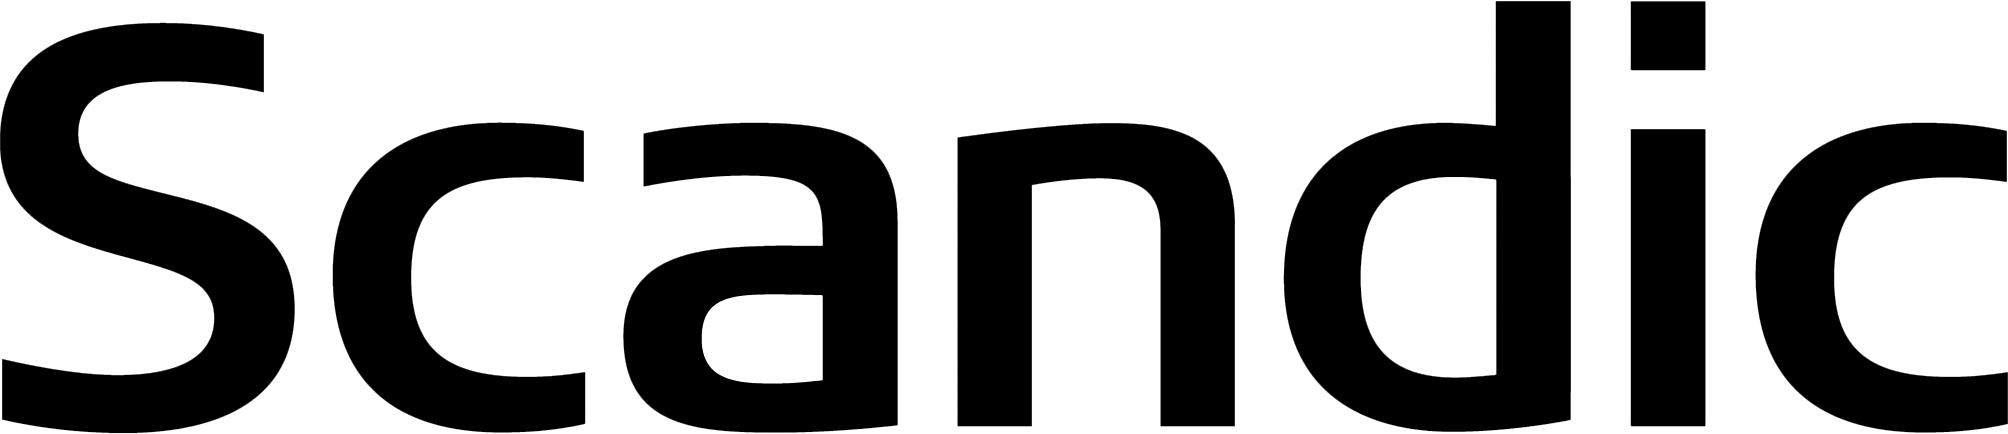 Scandic logo black